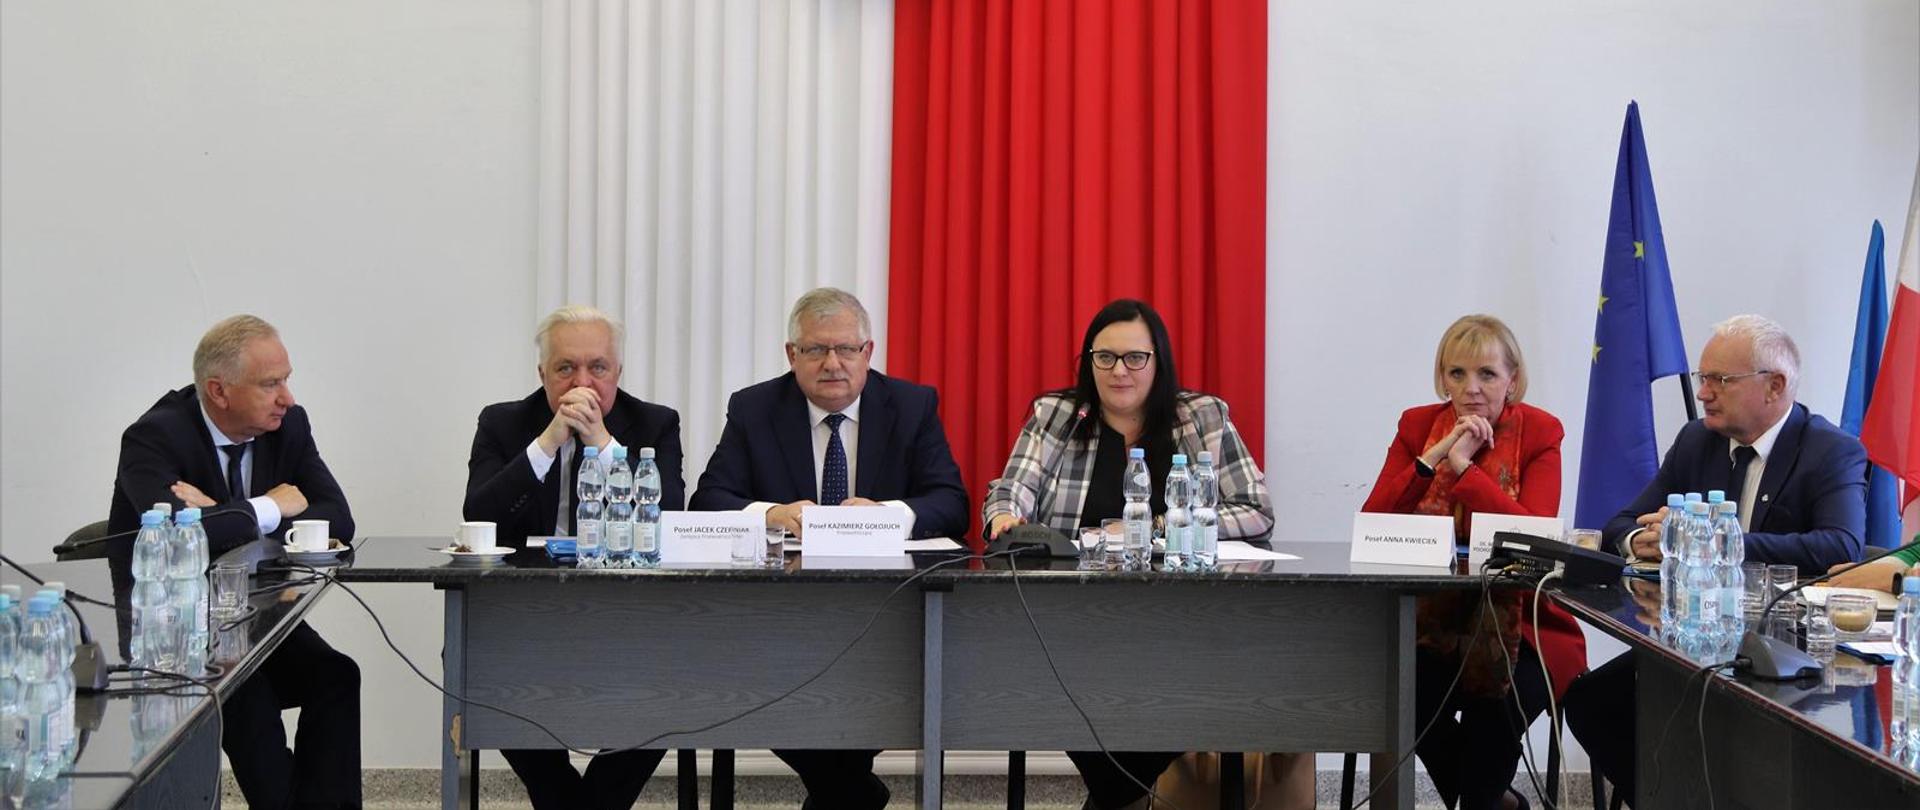 W sali obrad przy stołach siedzi grupa osób. Na wprost, druga od prawej wiceminister Małgorzata Jarosińska-Jedynak.